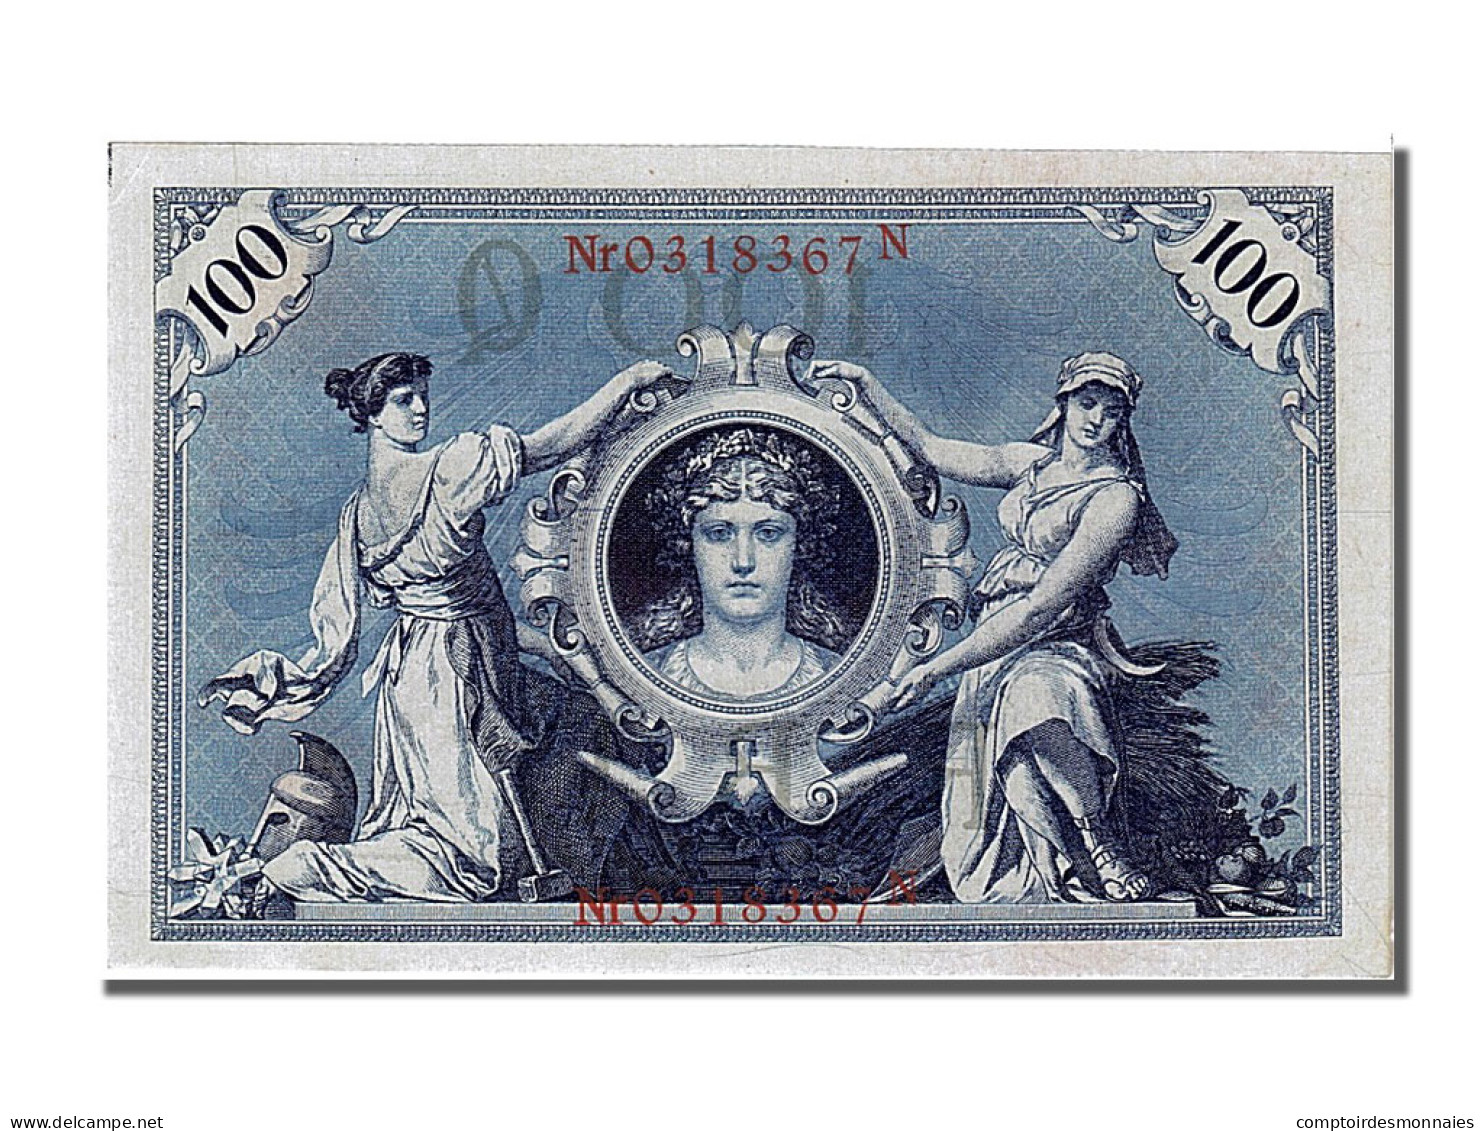 Billet, Allemagne, 100 Mark, 1908, 1908-02-07, NEUF - 100 Mark